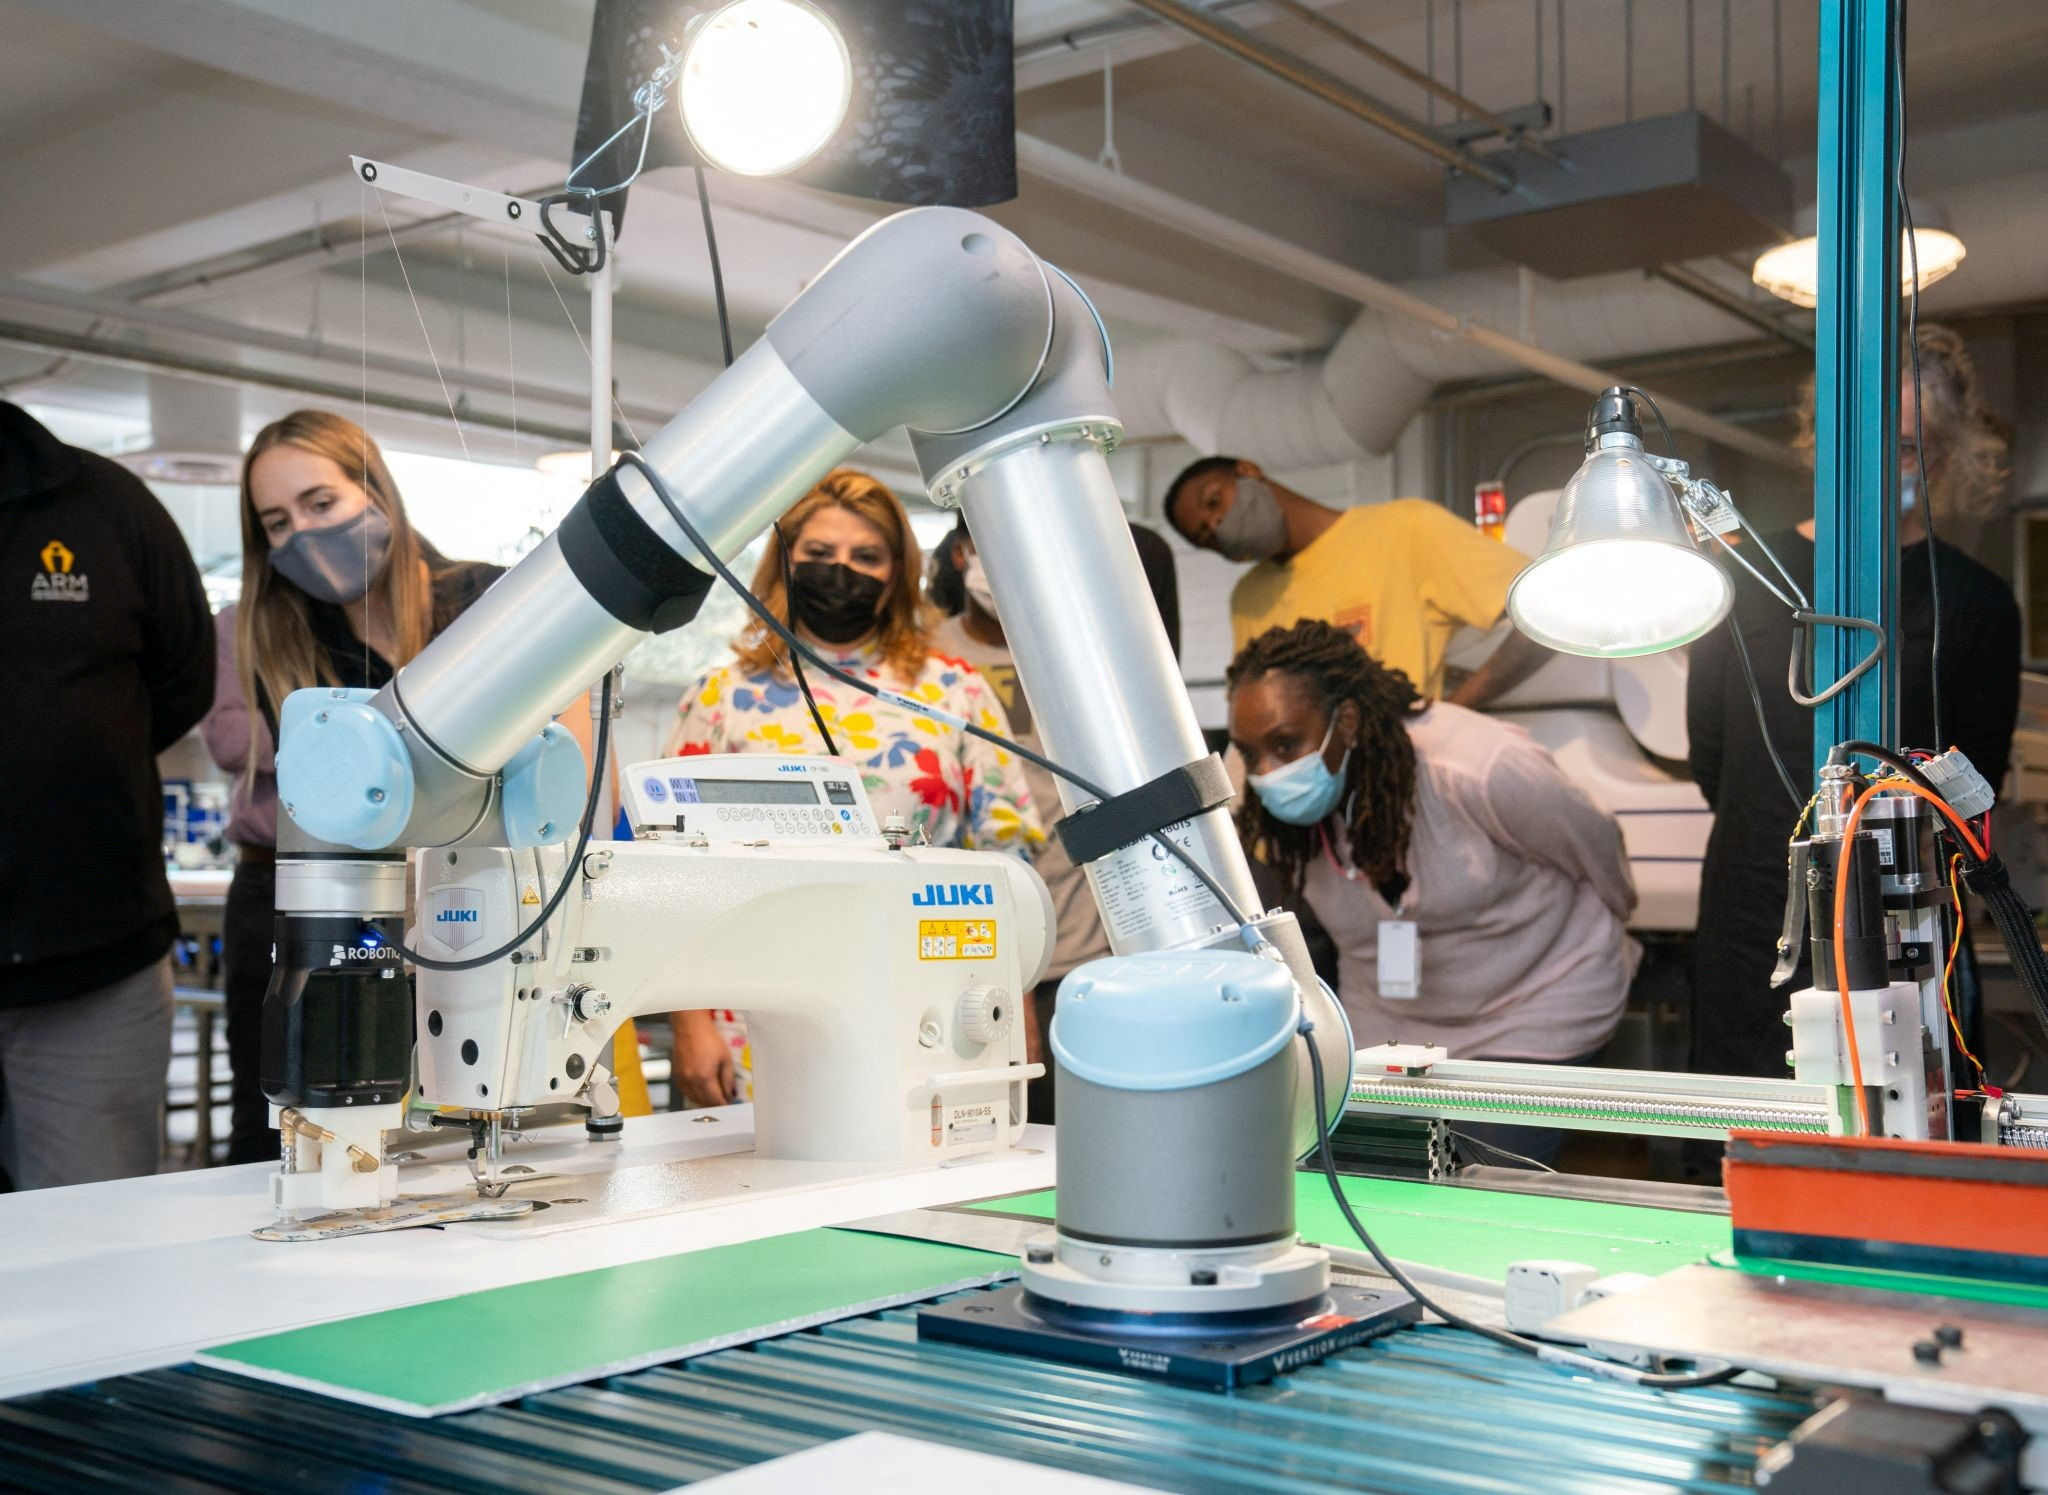 Um braço robótico posiciona pedaços de tecido endurecido para uma demonstração de costura automatizada no Industrial Sewing and Innovation Center em Detroit, Michigan, EUA
19/08/2021
Industrial Sewing and Innovation Center via REUTERS